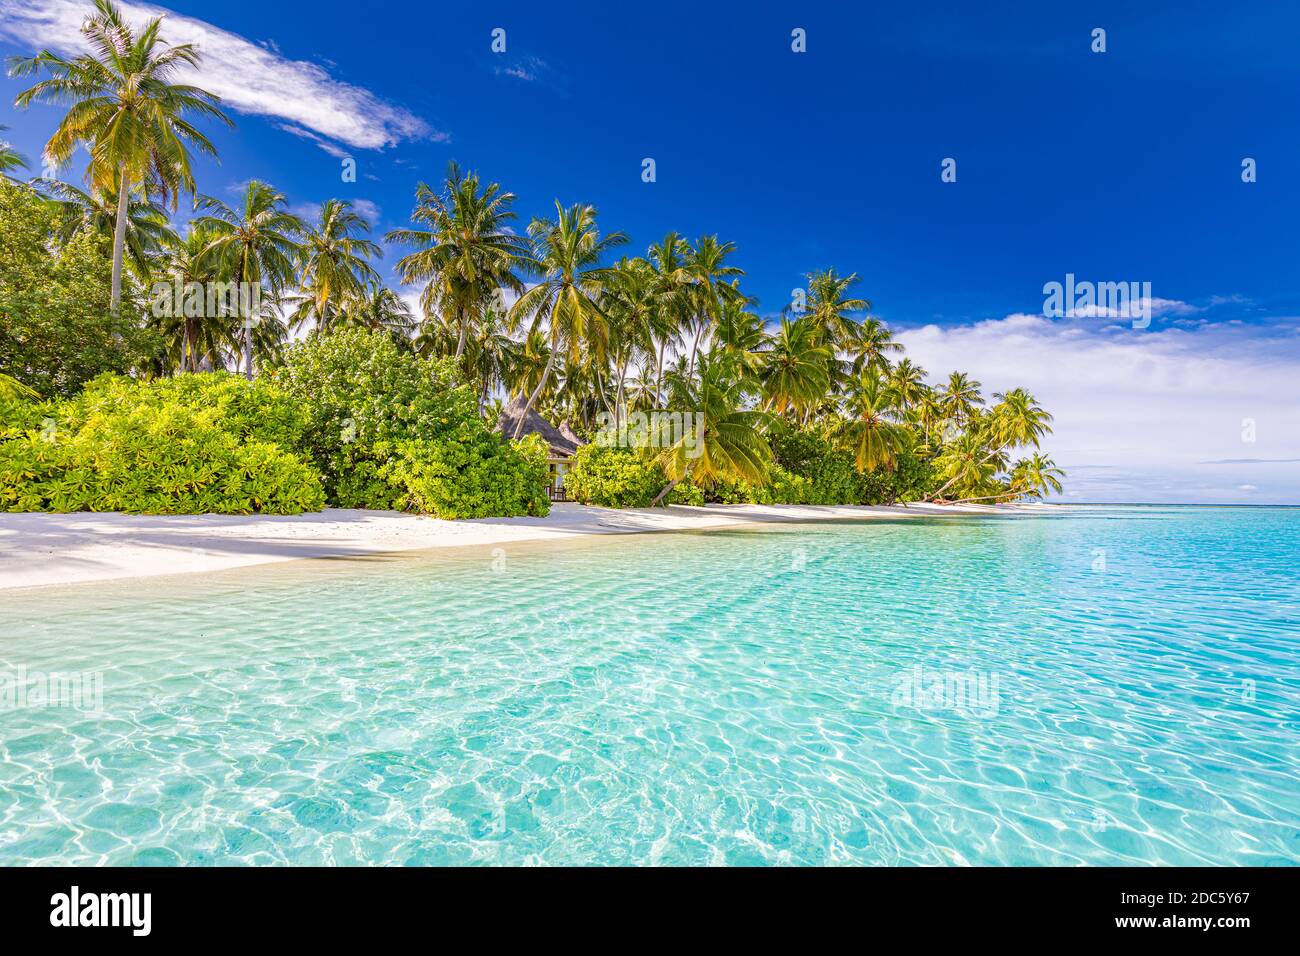 Ruhige Strandszene. Sonnige exotische tropische Strandlandschaft. Sommerurlaub Urlaubskonzept. Luxusreiseziel, idyllische Natur, Palmen, Meer Stockfoto